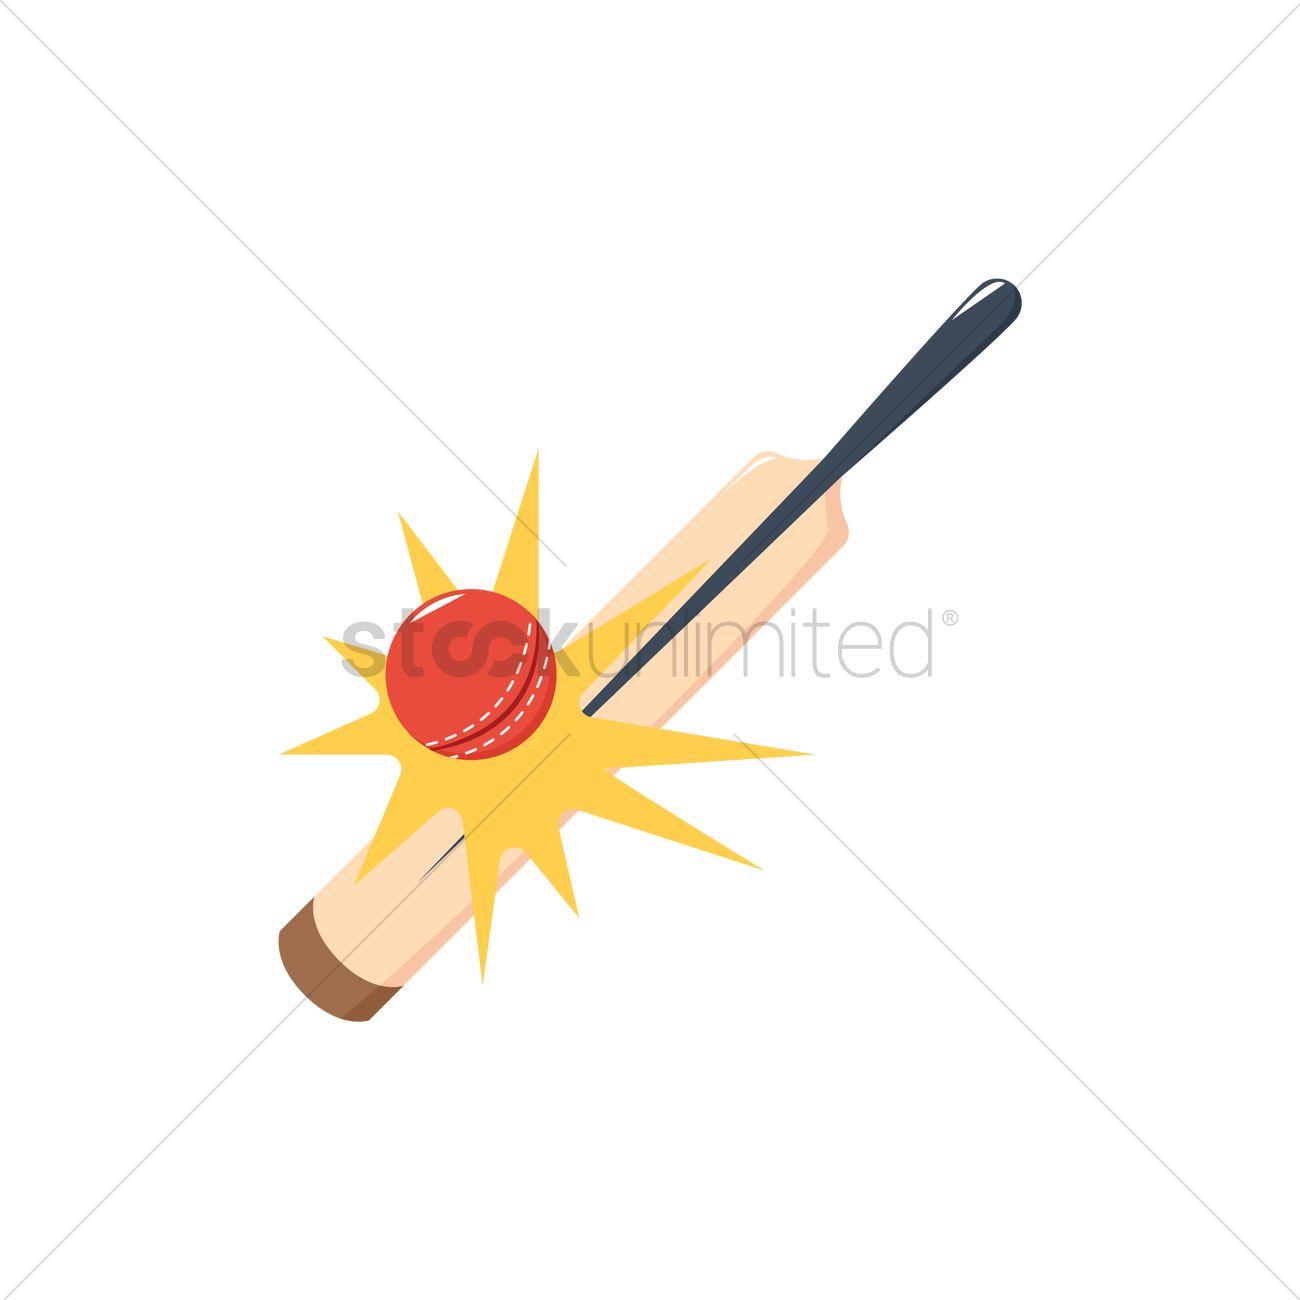 Bat Hitting Ball Logo - Cricket bat hits ball Vector Image